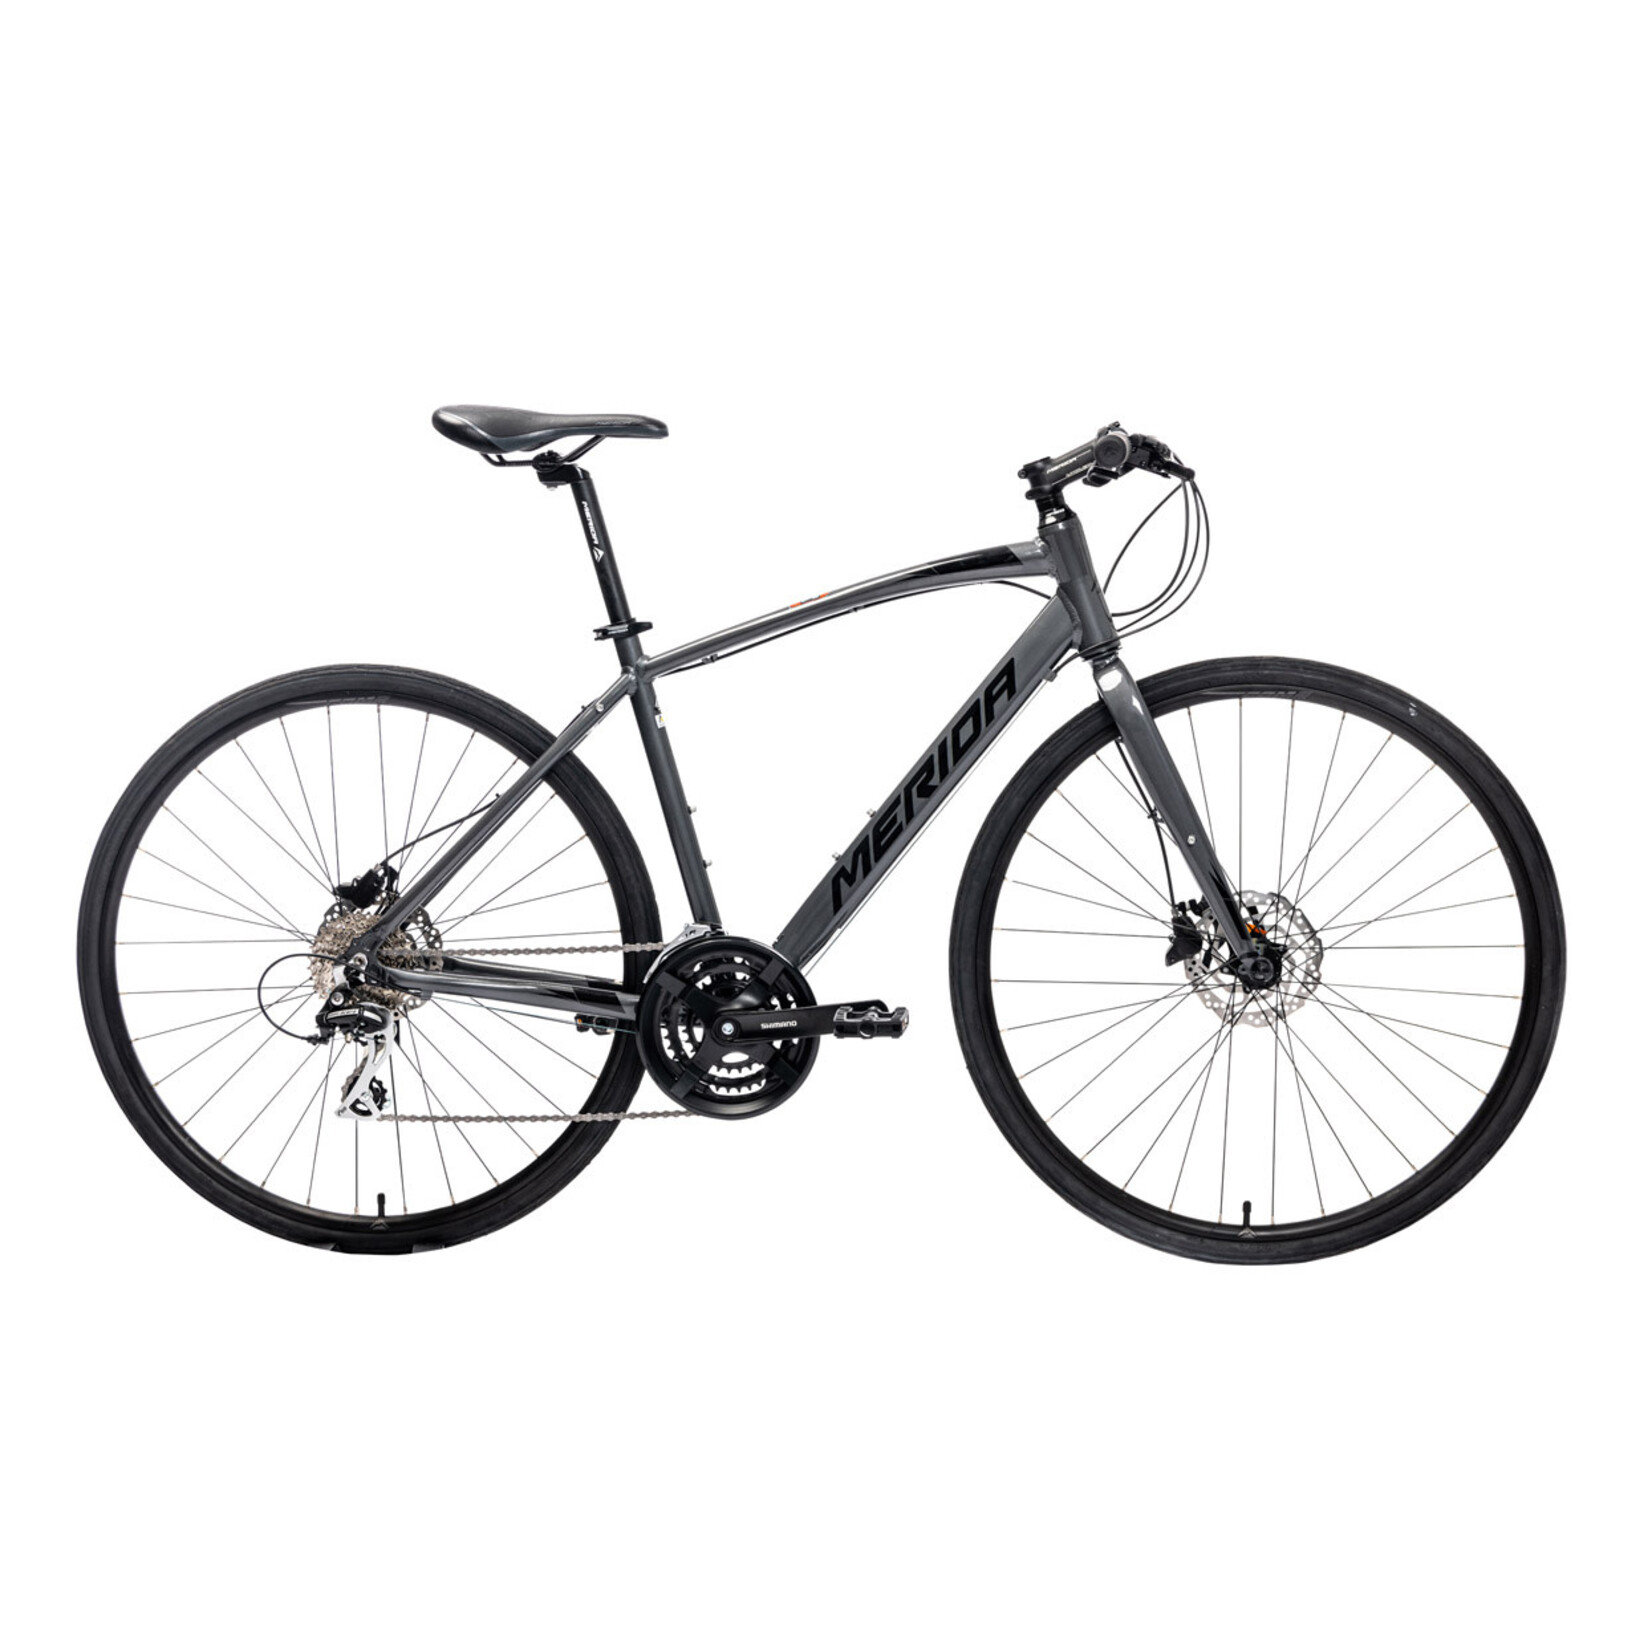 Merida Merida 2022 Speeder 20 Road Bike - Black - Medium/Large (54)